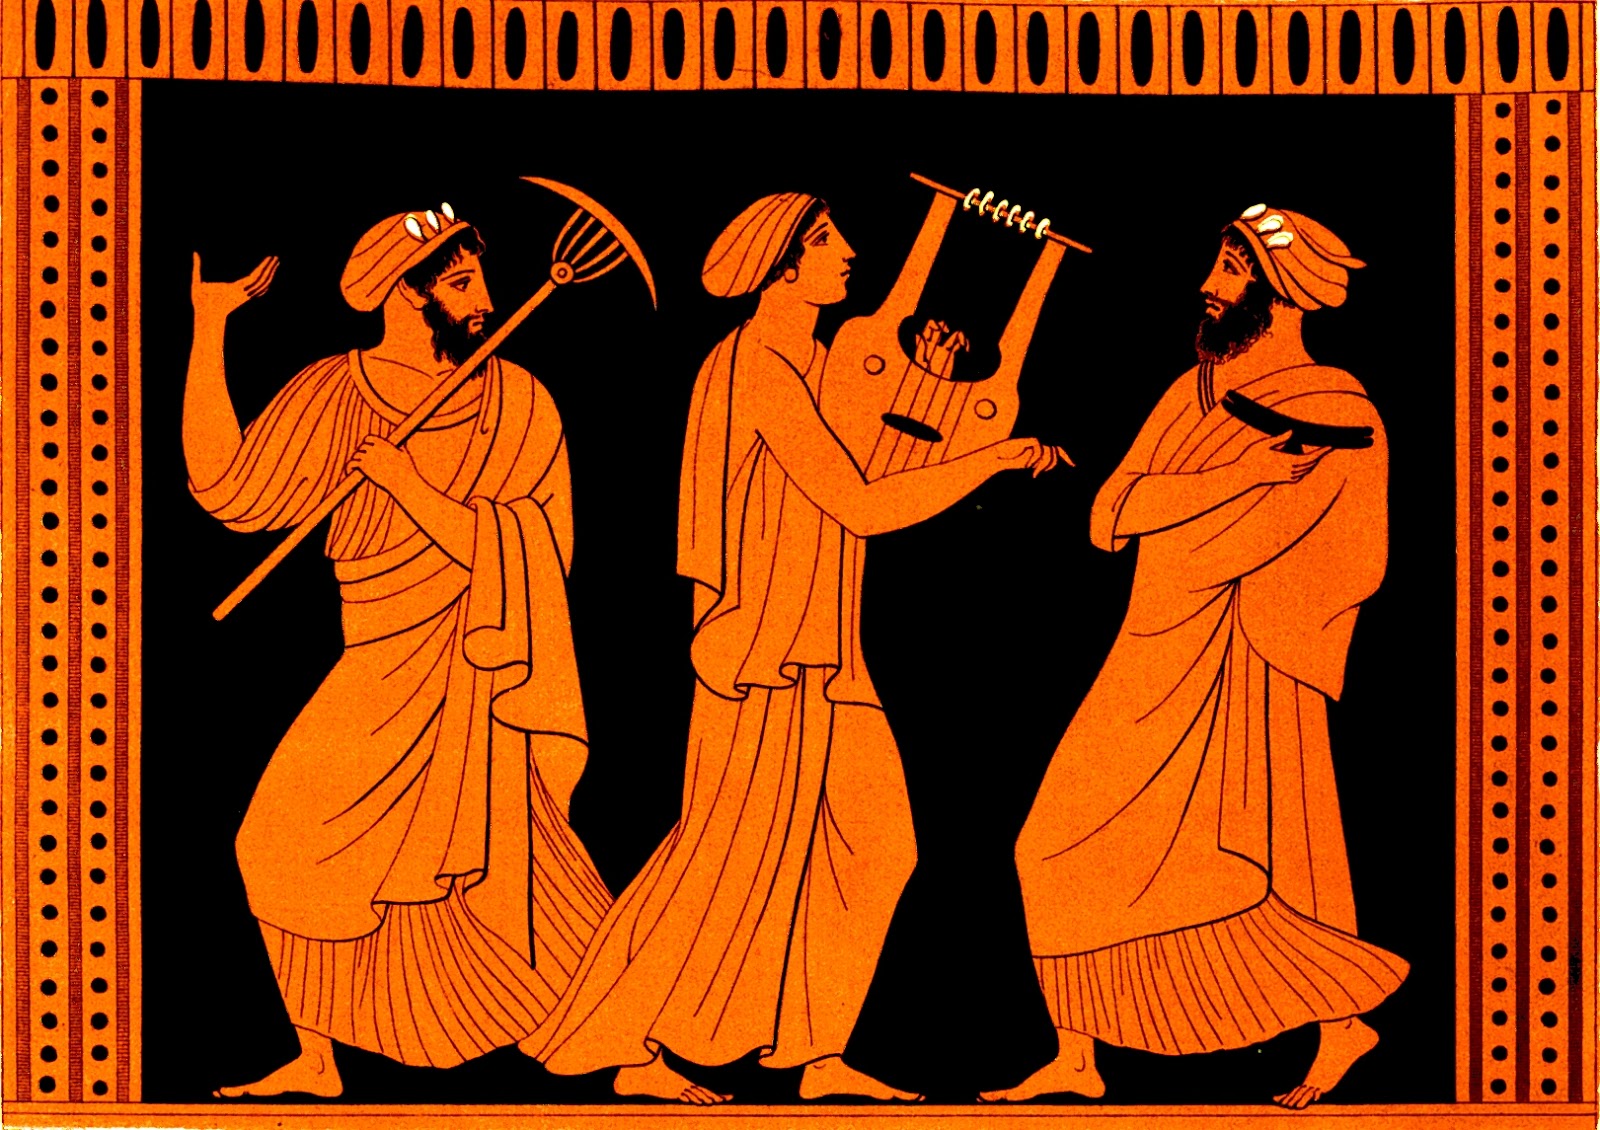 Урок искусство и досуг в древней греции